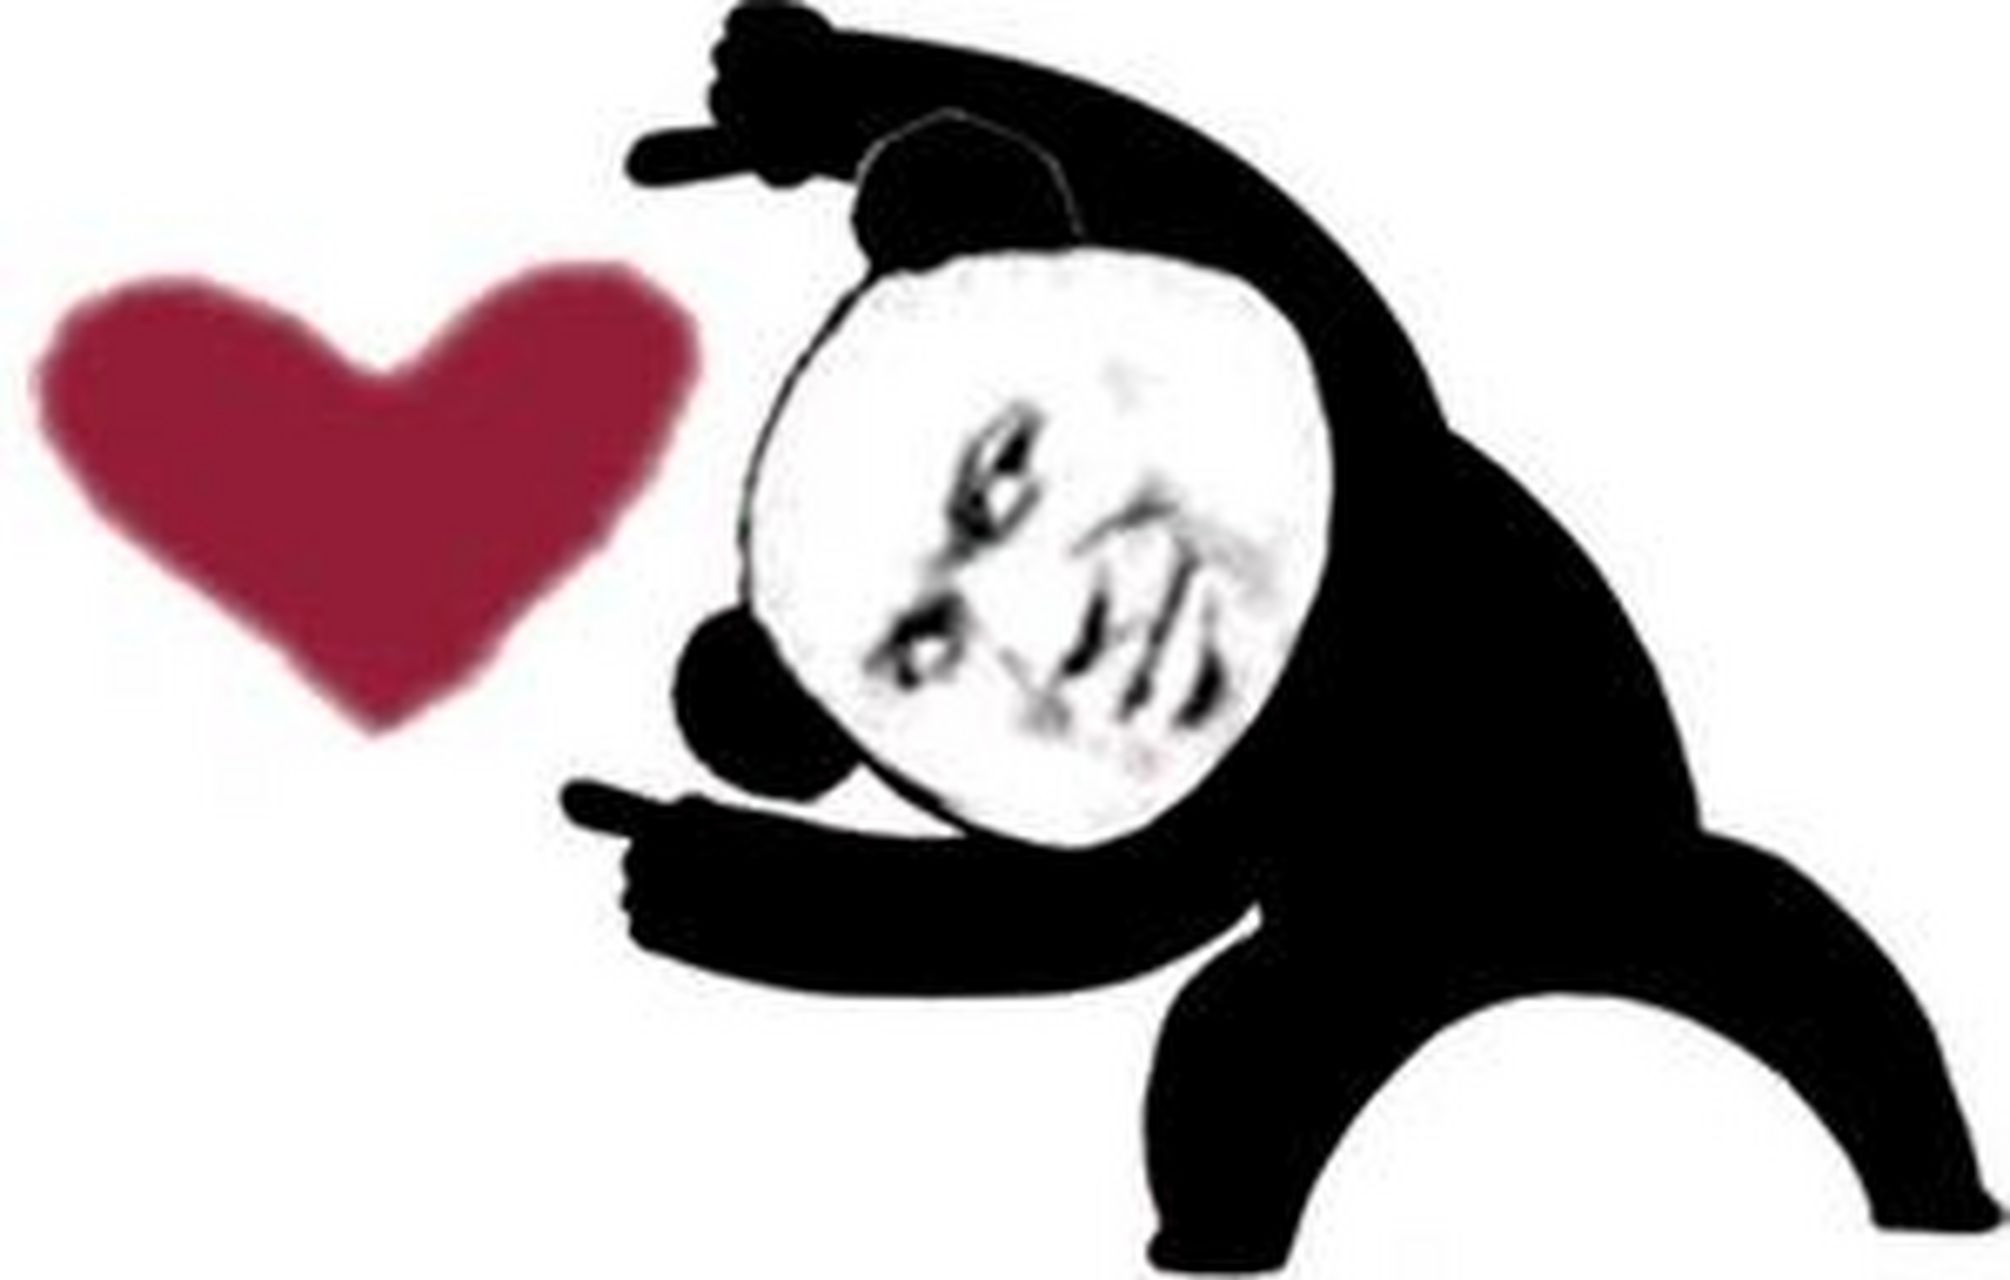 熊猫比心表情包图片